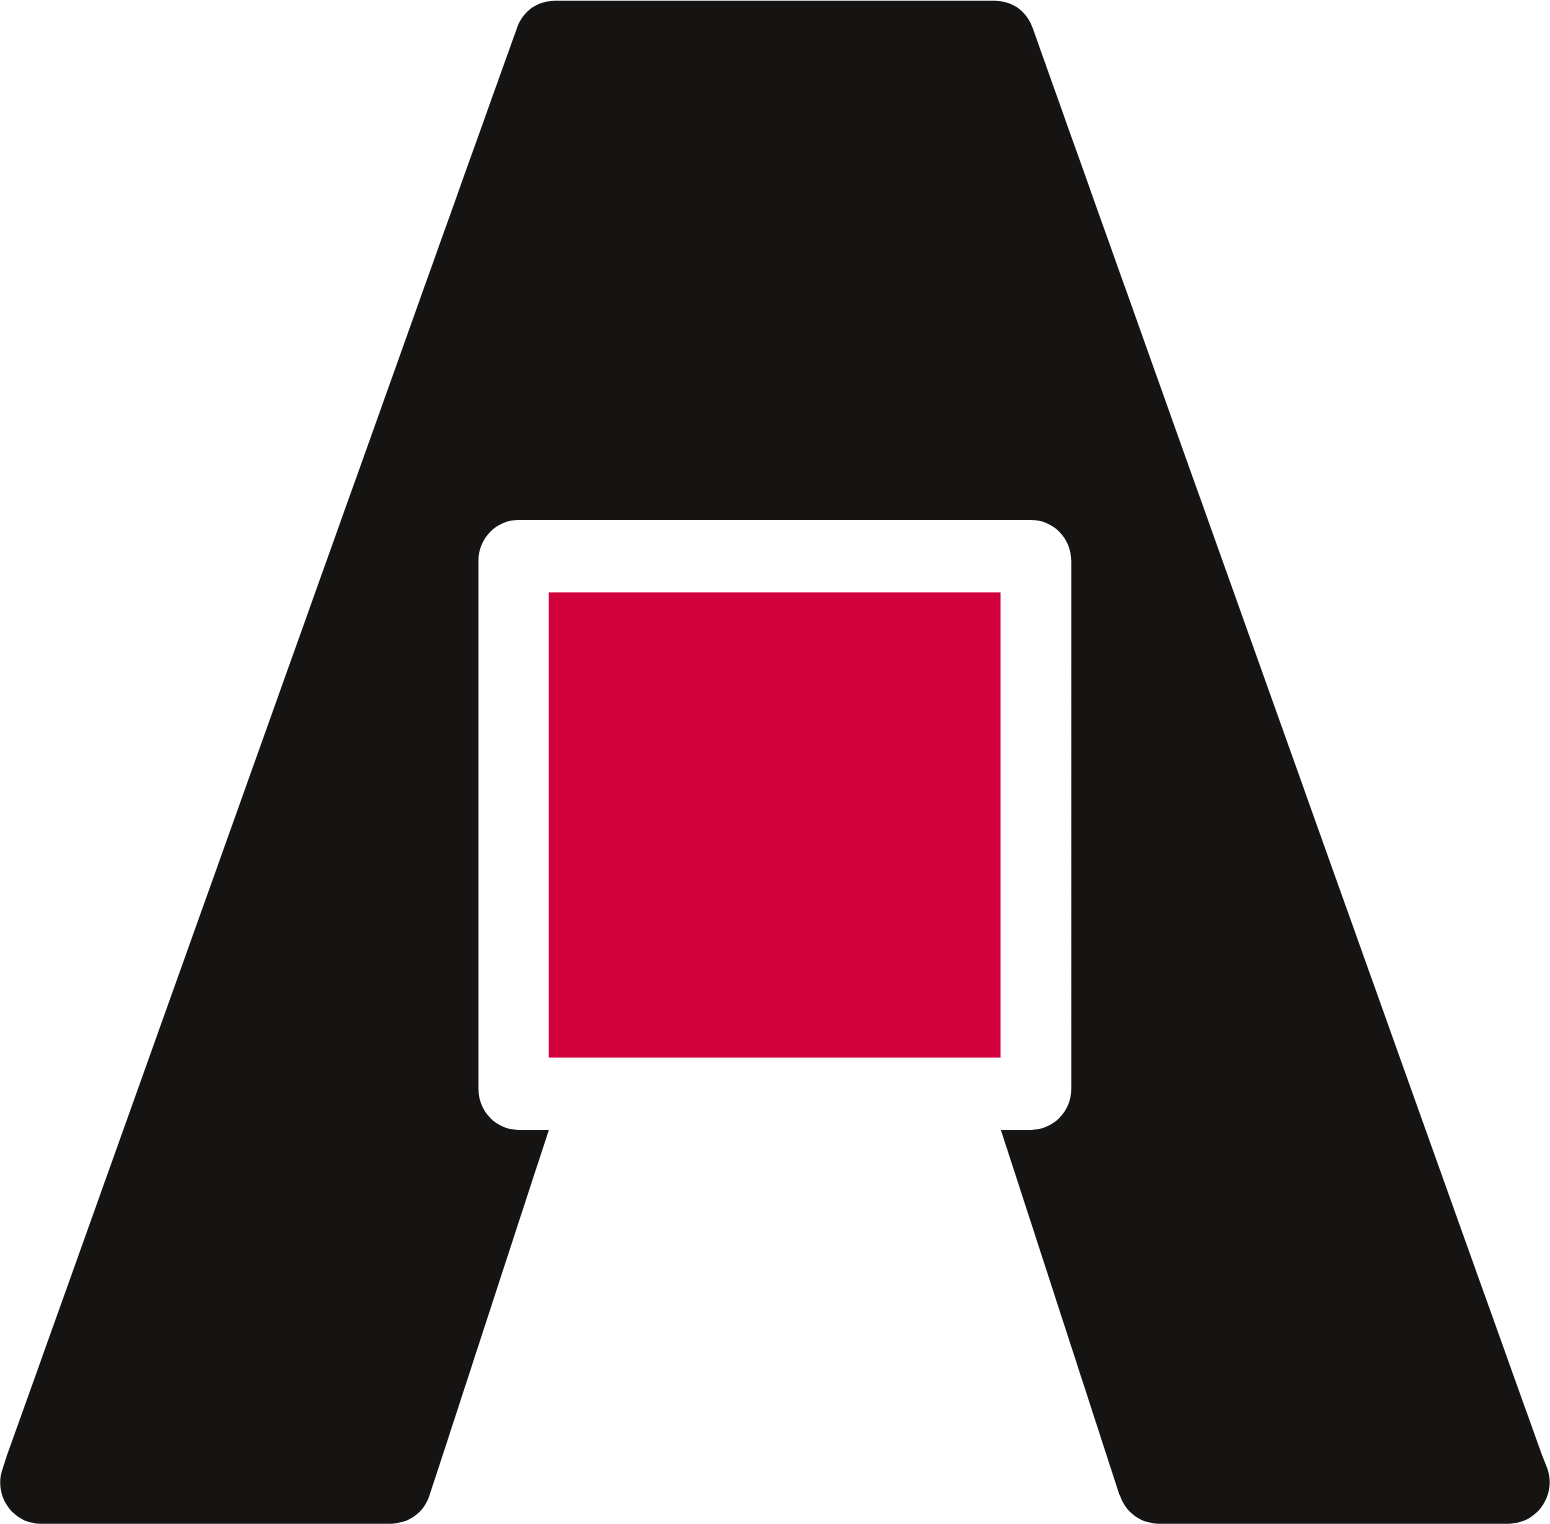 Shurgard Self Storage logo (transparent PNG)